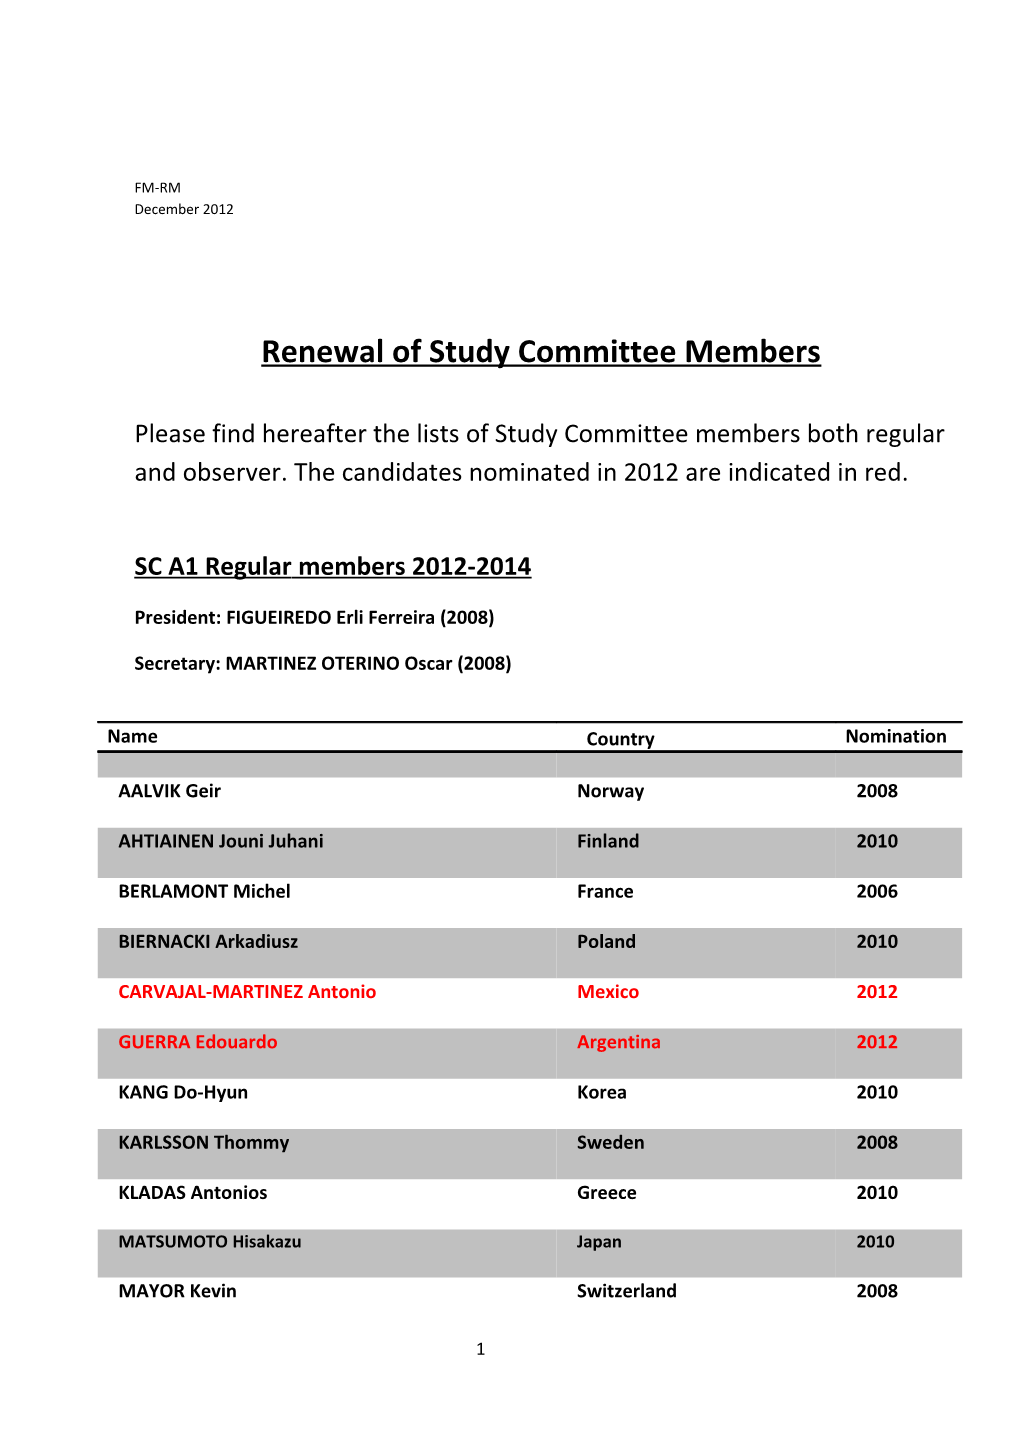 Renewal of Study Committee Members